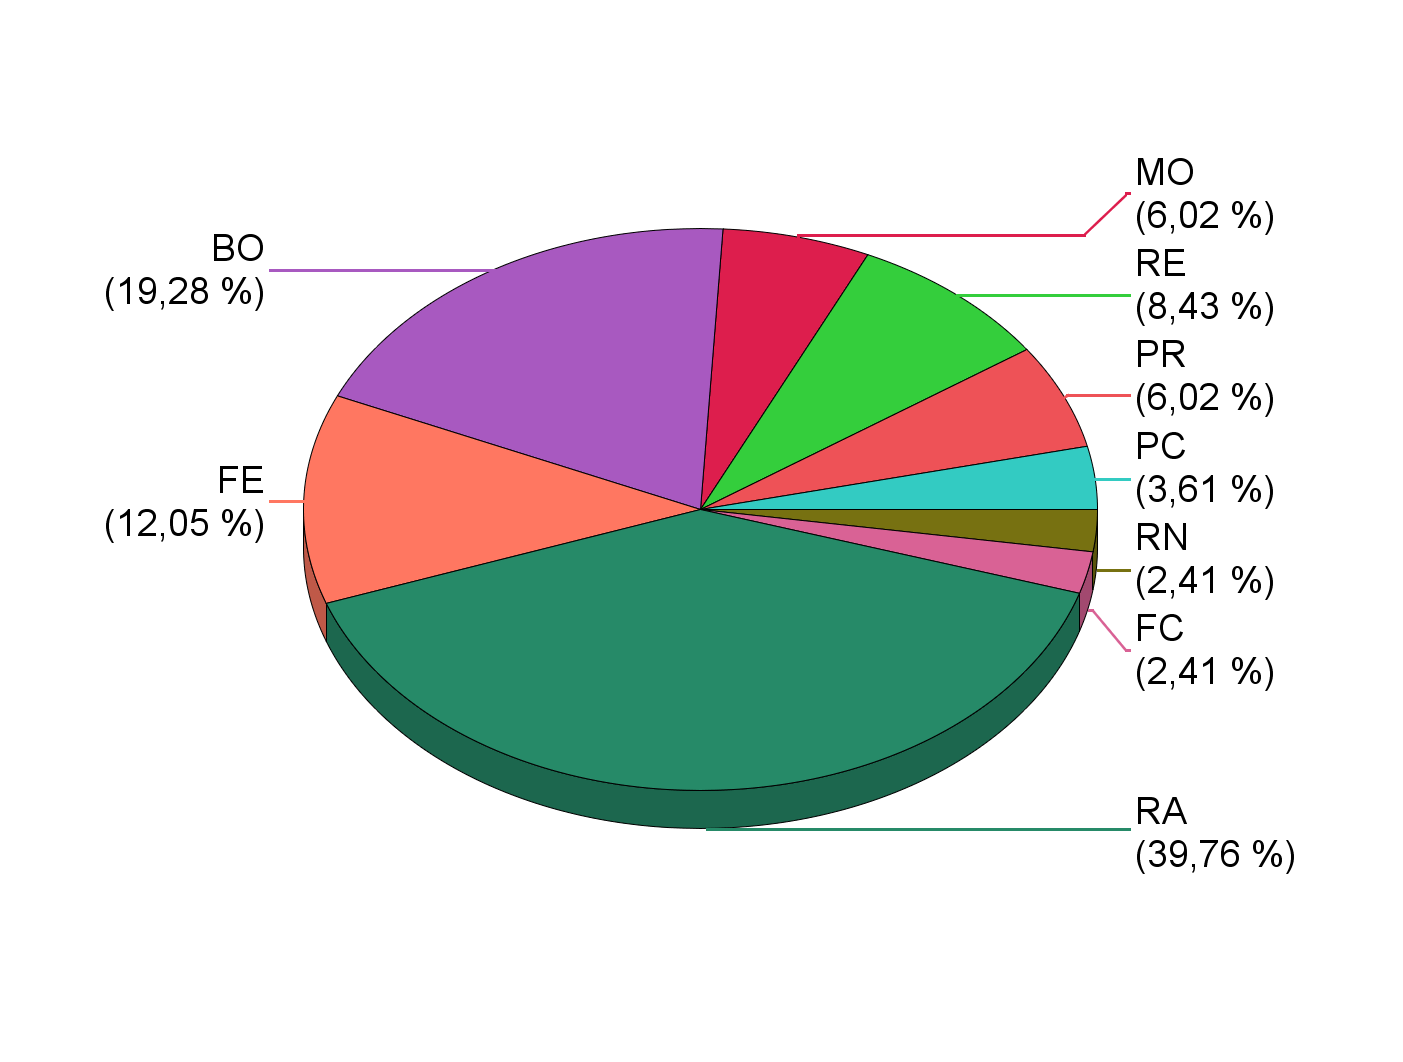 Numero di Stabilimenti RIR in esercizio - Distribuzione per Provincia Provincia Numero Stabilimenti Percentuale PC 3 4% PR 5 6% RE 7 8% MO 5 6% BO 16 19% FE 10 12% RA 33 40% FC 2 2% RN 2 2% TOTALE 83